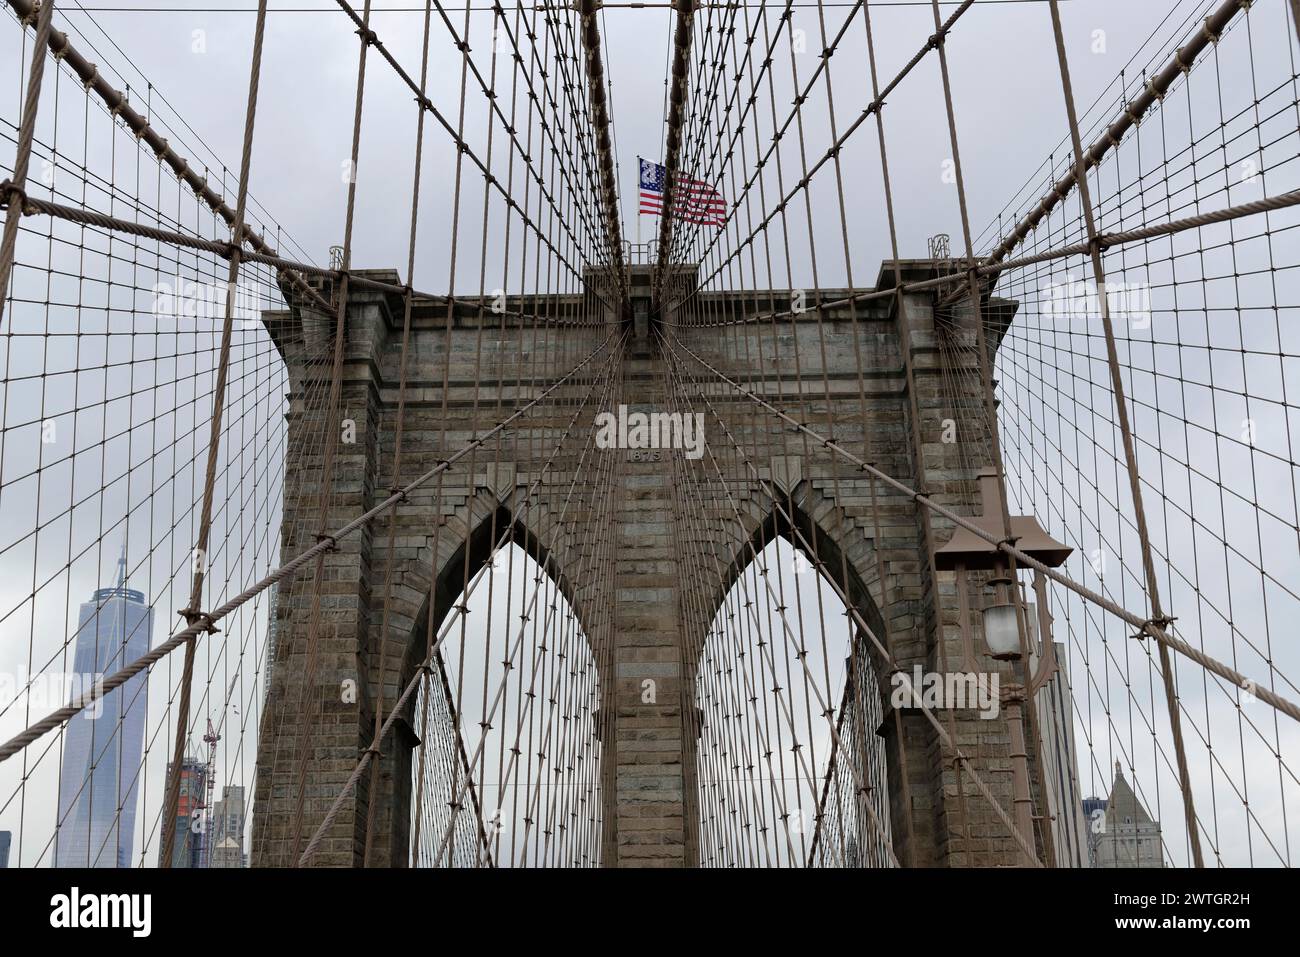 Brooklyn Bridge, Nahaufnahme eines Brückenturms mit schwenkender Flagge, umwickelt in Seile und Kabel, Manhattan, New York City, New York, USA, Nordamerika Stockfoto